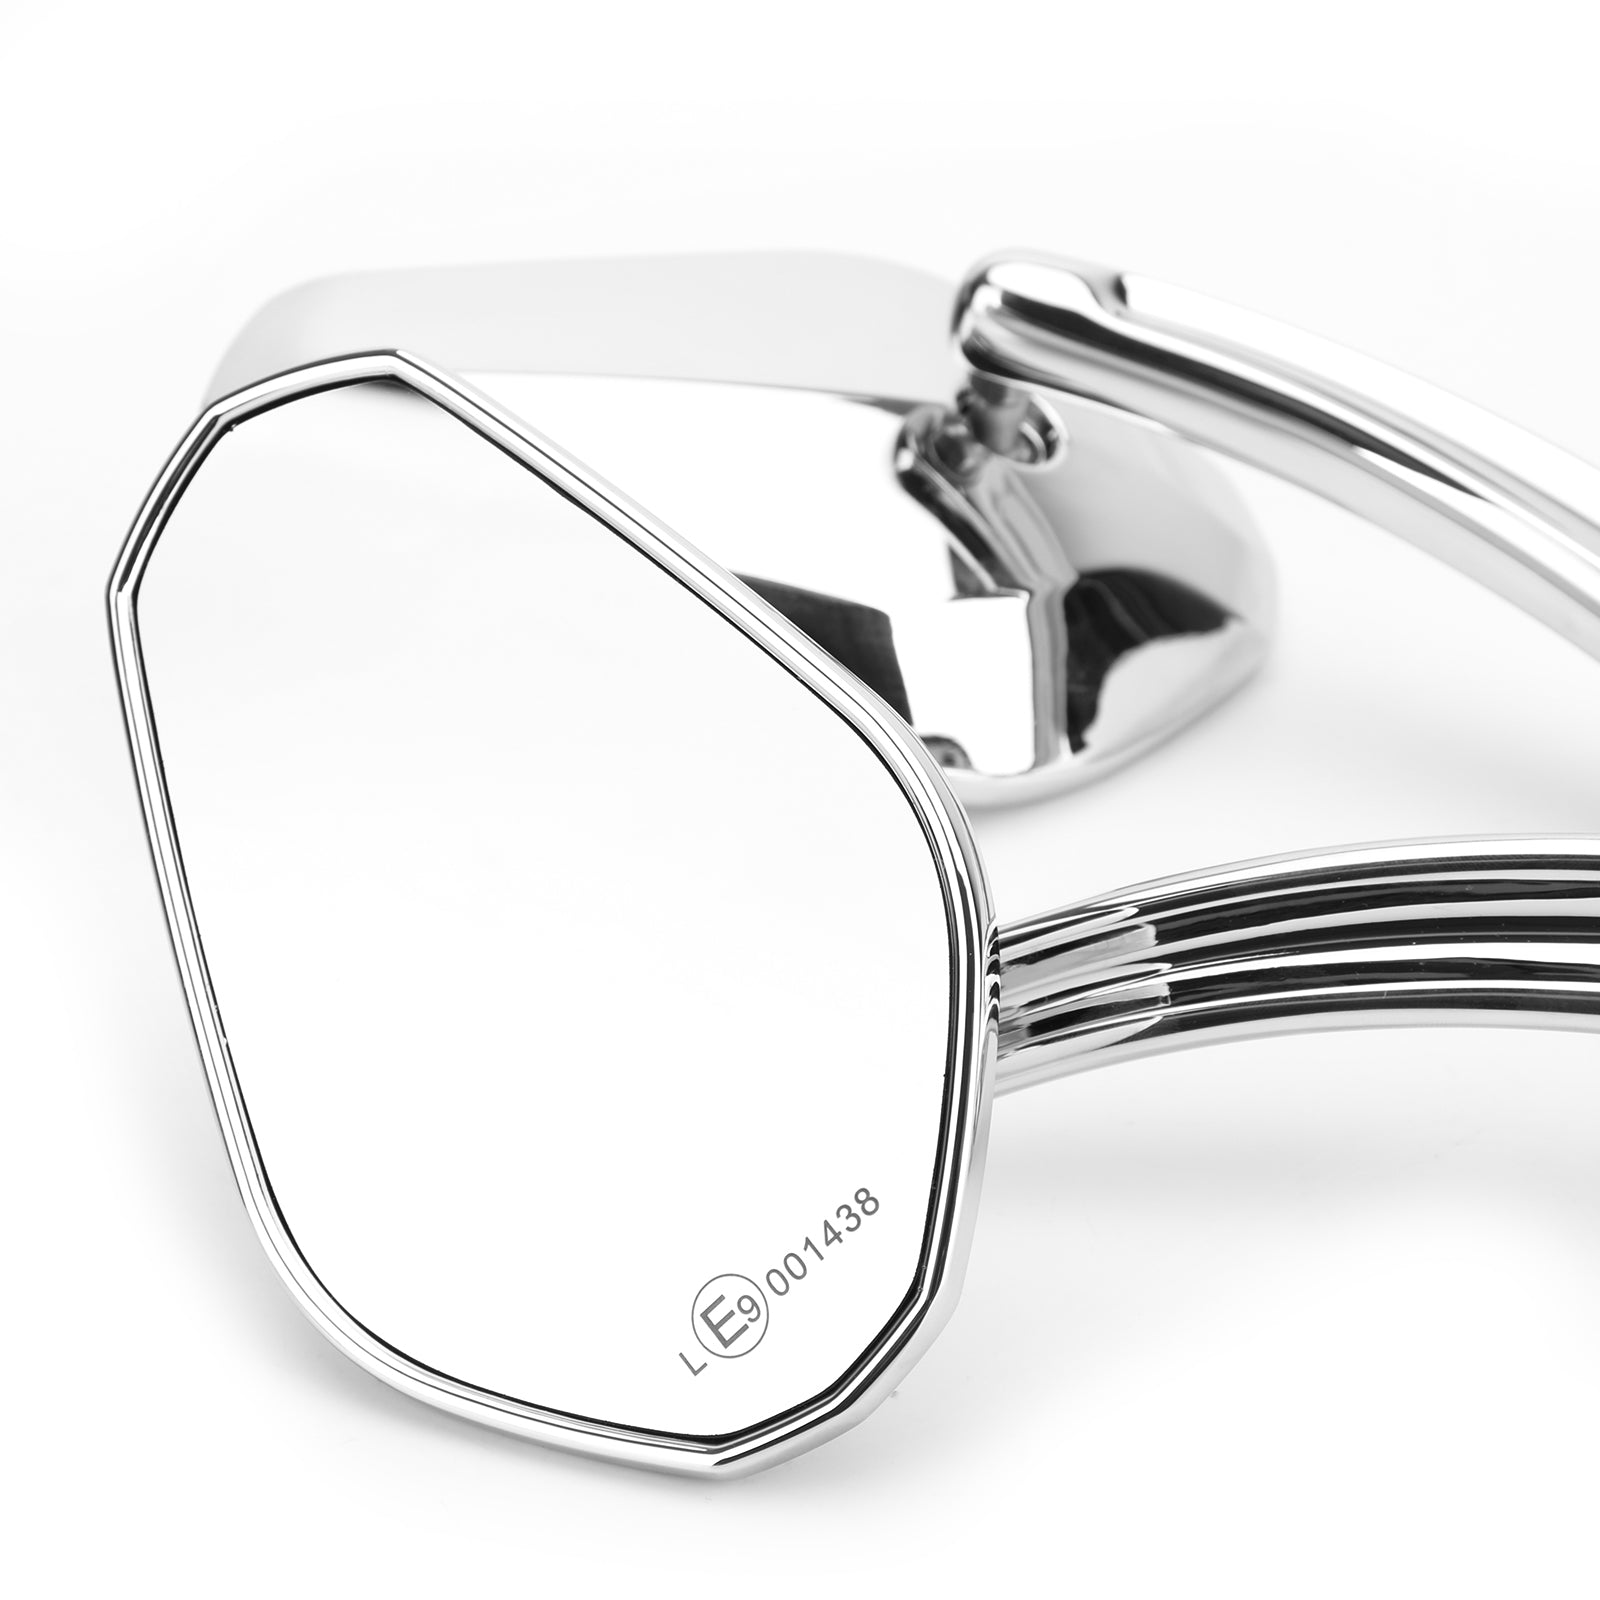 Specchietti diamantati per motociclette adatti per Harley Cruiser Touring generici